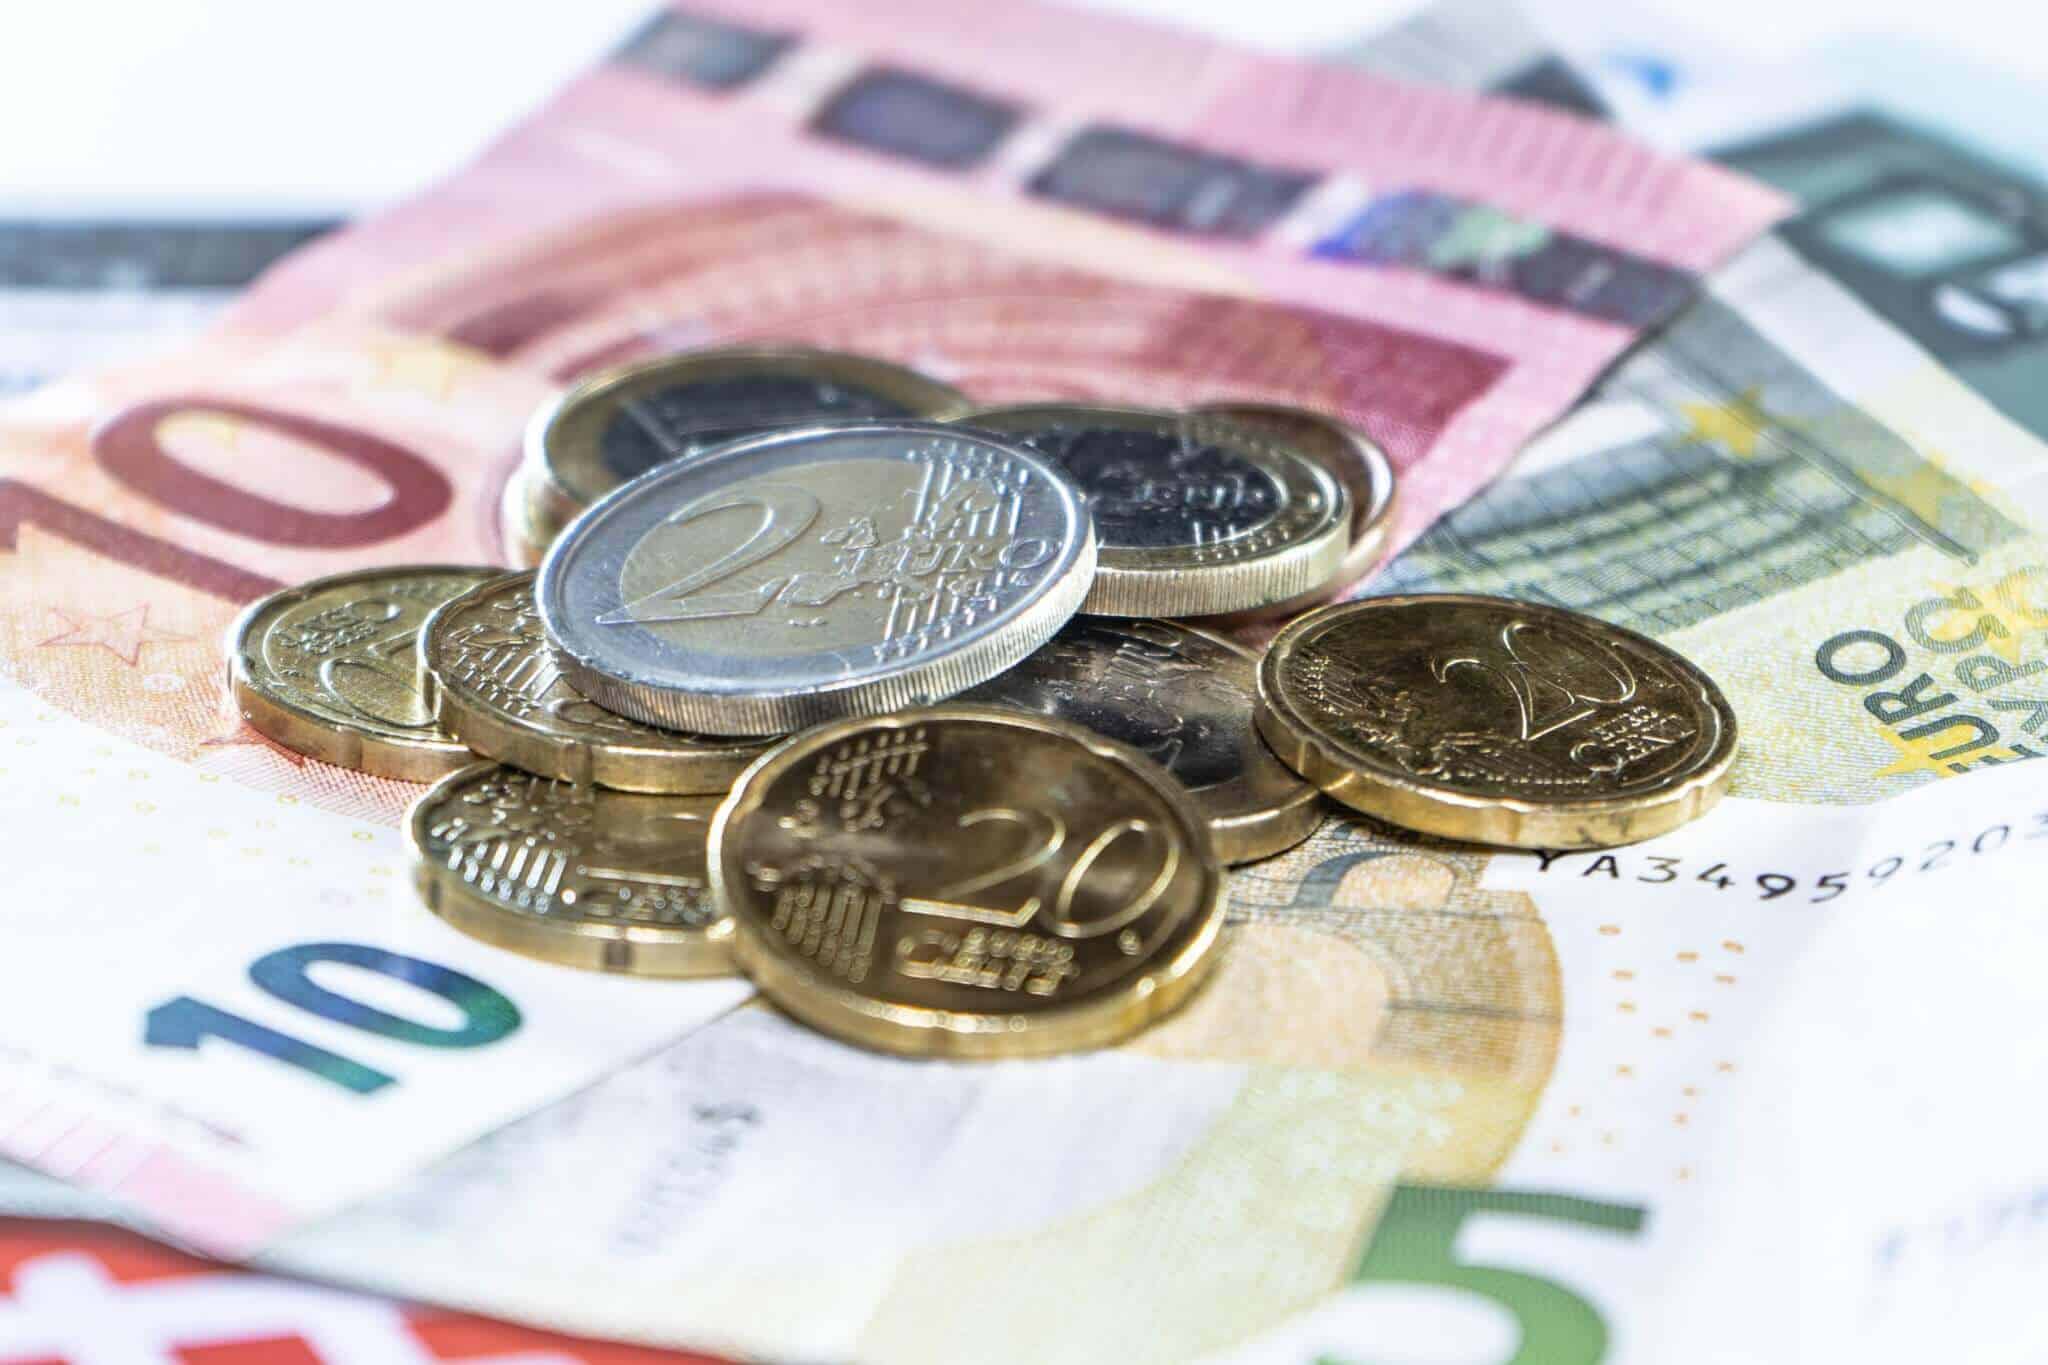 euros notas e moedas